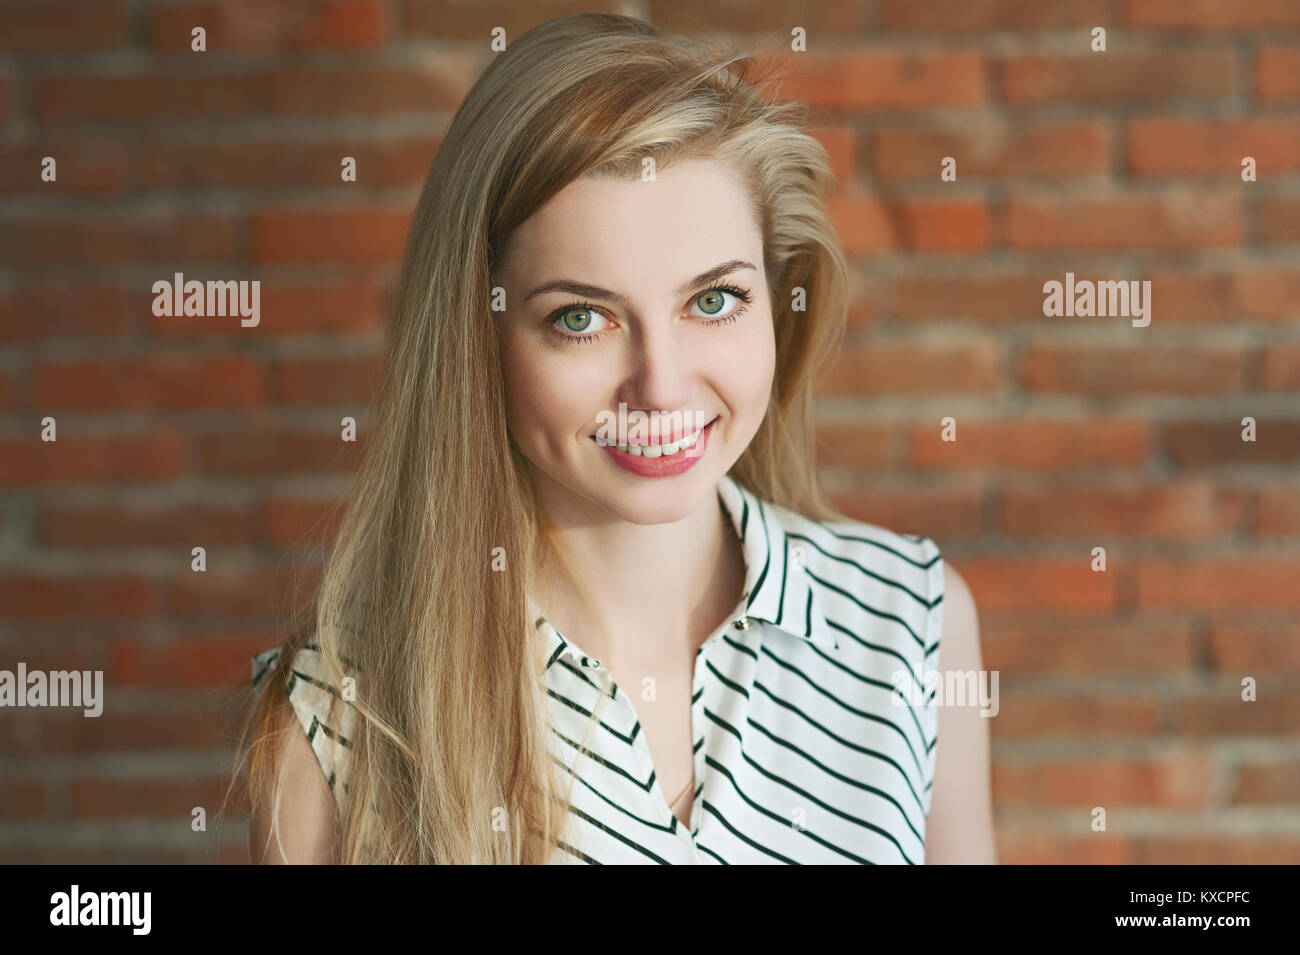 Porträt einer Blondine in ein Licht. Gegen einen Red brick wall Hintergrund, lächelnd und für die Kamera posieren. ihr langes Haar passt in eine Richtung. Stockfoto